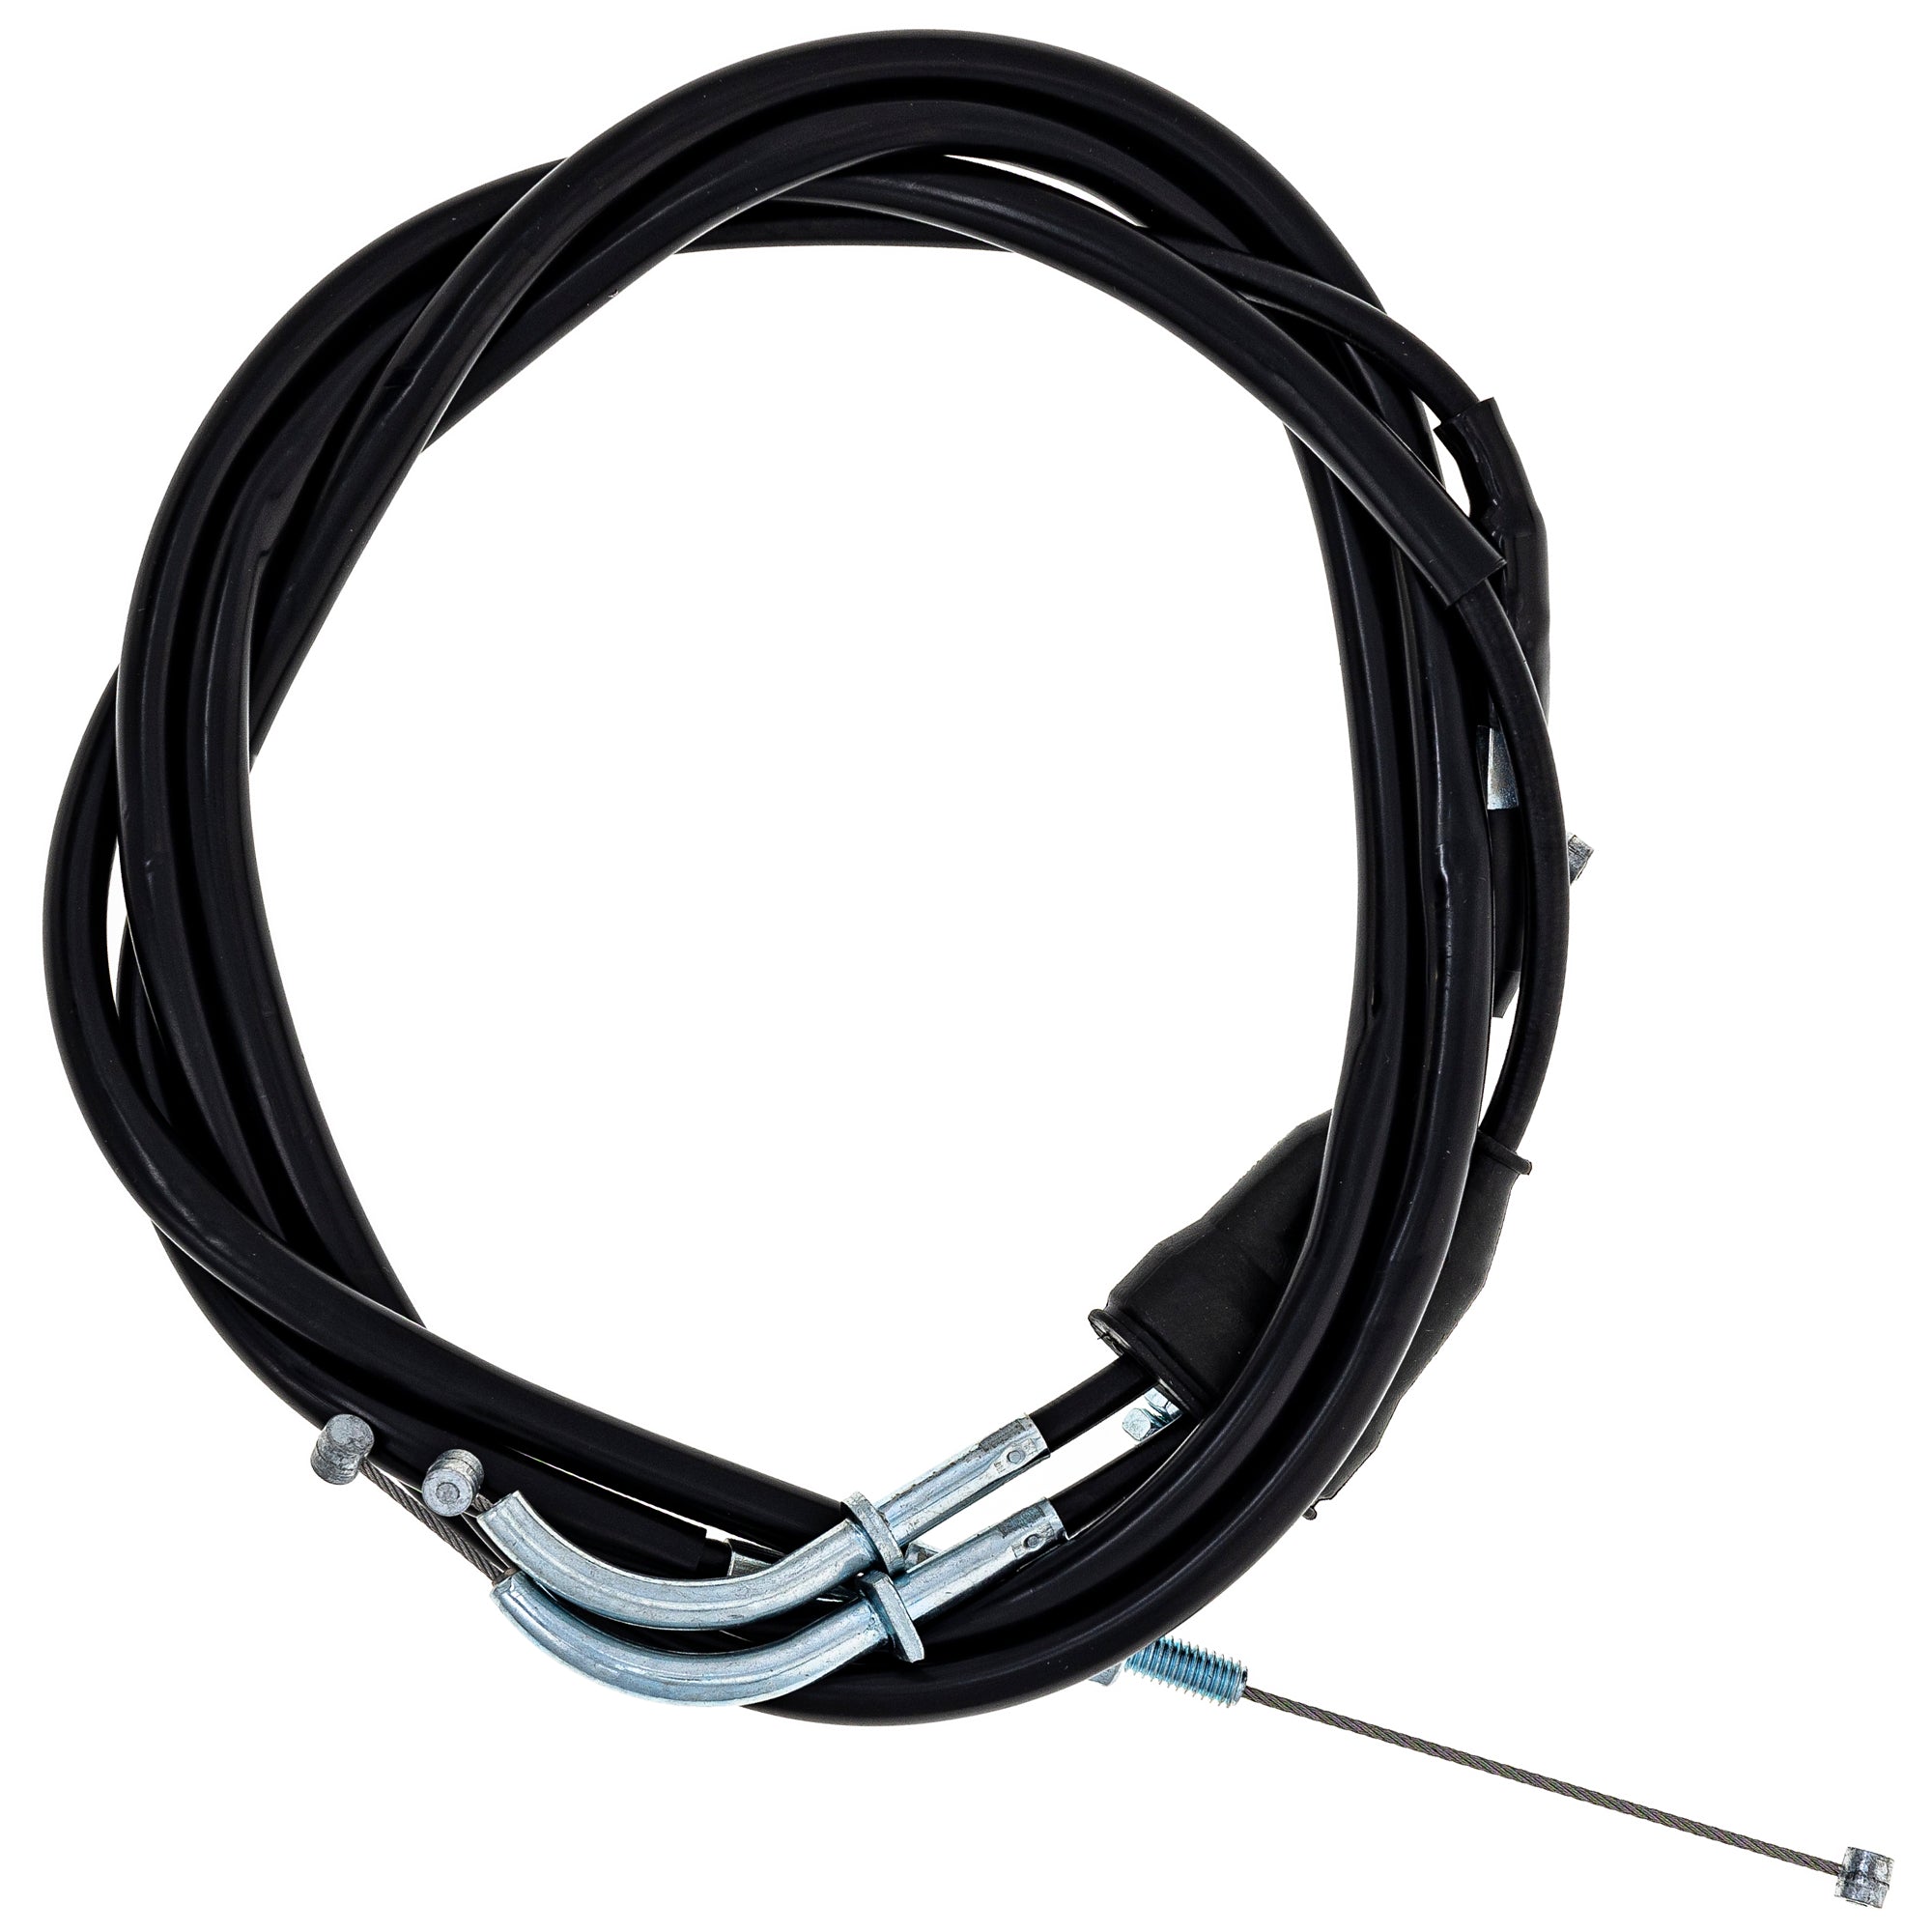 Throttle Cable Set for zOTHER DRZ400SM DRZ400S DRZ400E DRZ400 NICHE 519-CCB2351L